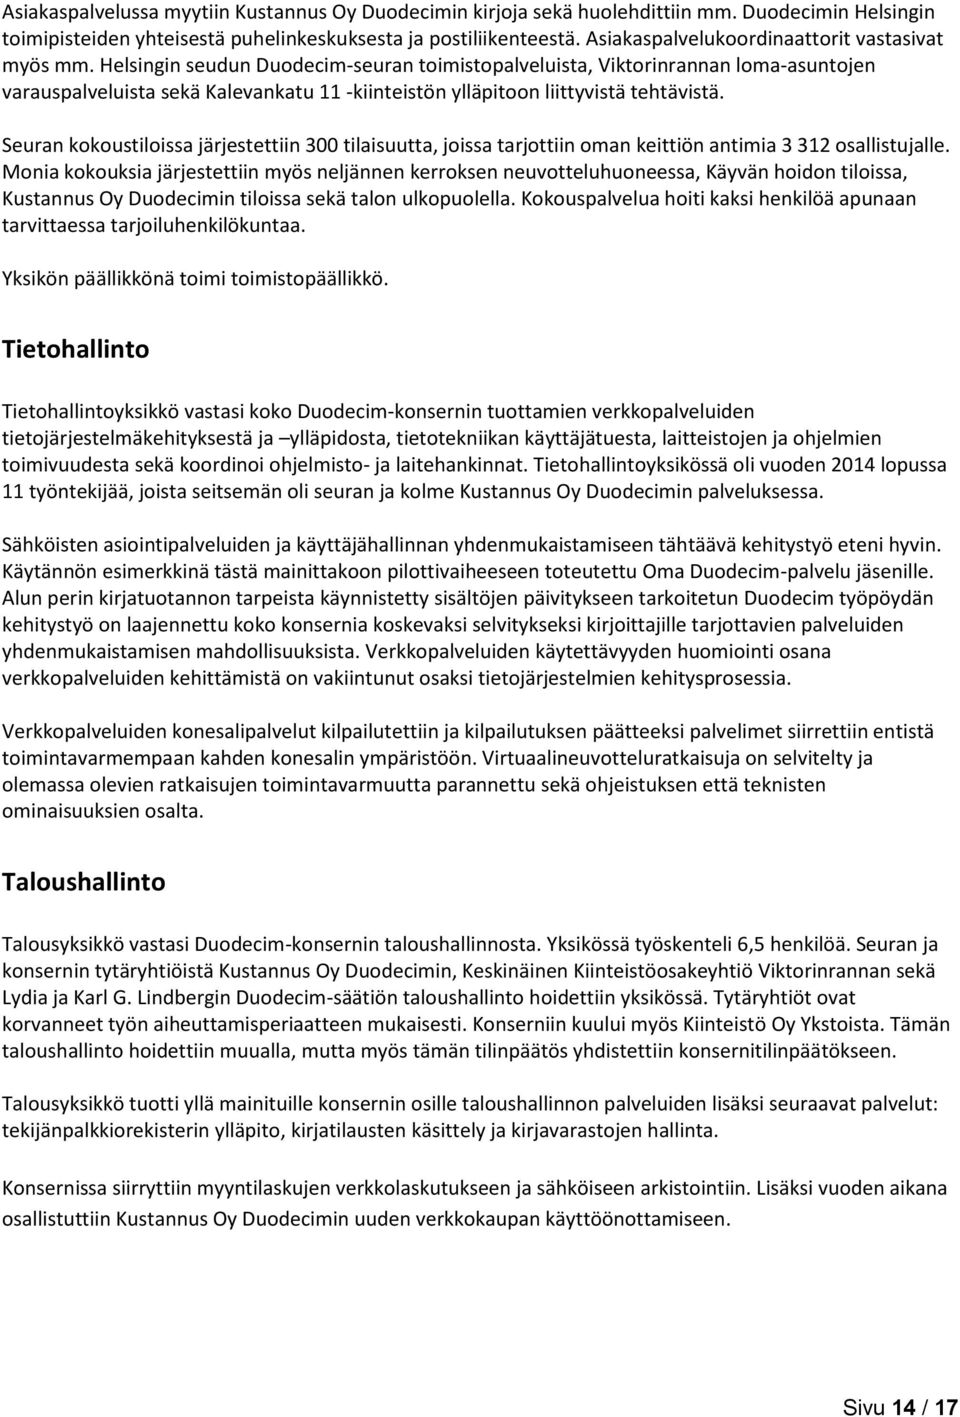 Helsingin seudun Duodecim-seuran toimistopalveluista, Viktorinrannan loma-asuntojen varauspalveluista sekä Kalevankatu 11 -kiinteistön ylläpitoon liittyvistä tehtävistä.